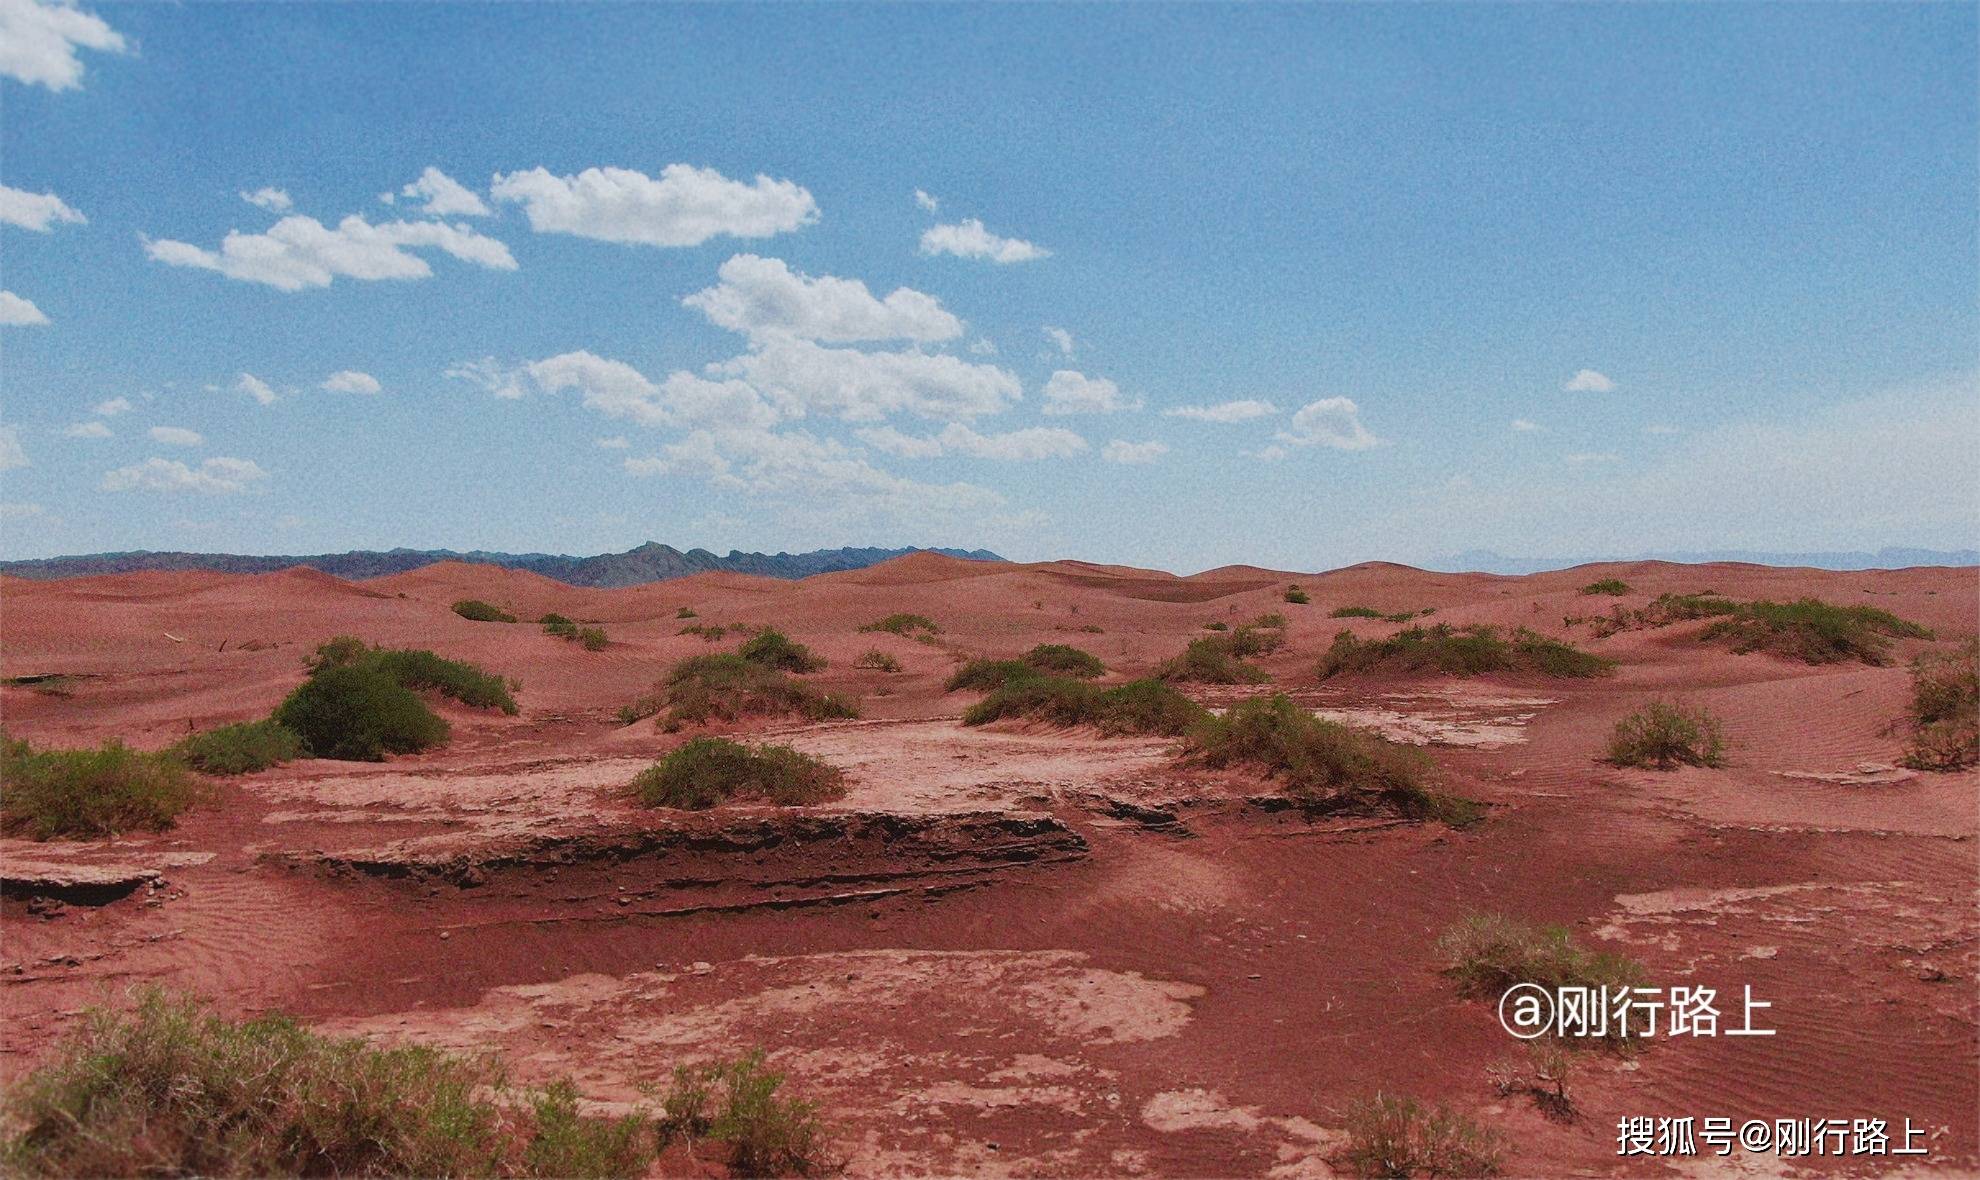 ✨【澳门最准一肖一码一码】✨-新疆最美的红沙漠，被誉为“塔里木盆地的明珠”，你去过吗？